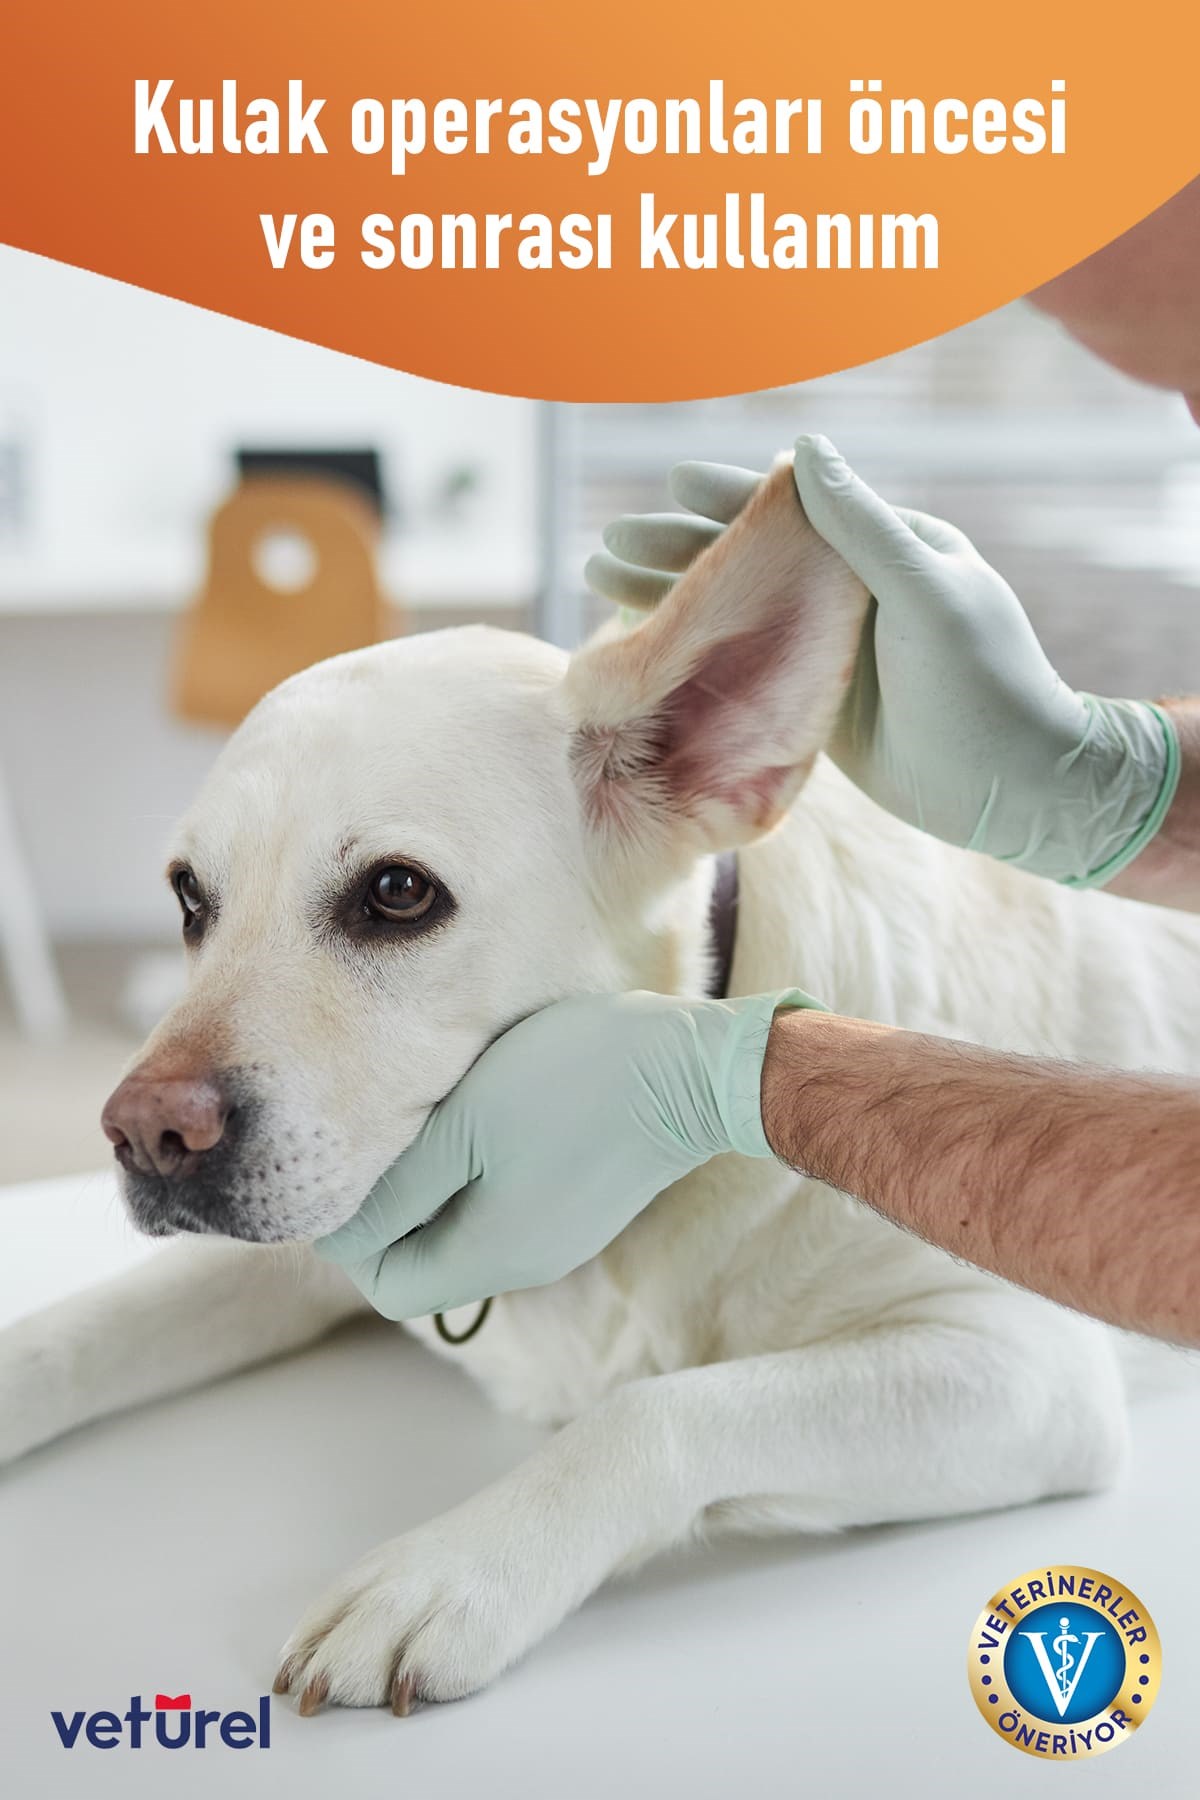 Dr KOCHERS Hijyen ArGe San. Tic. A.Ş.Göz Kulak ve Ağız Bakımı  ÜrünleriVeturelAğız ve Diş Göz Kulak Bakımı 3'lü Hipokloröz Sprey Seti Kedi  Köpek Plak Alerji Enfeksiyon Önleyici